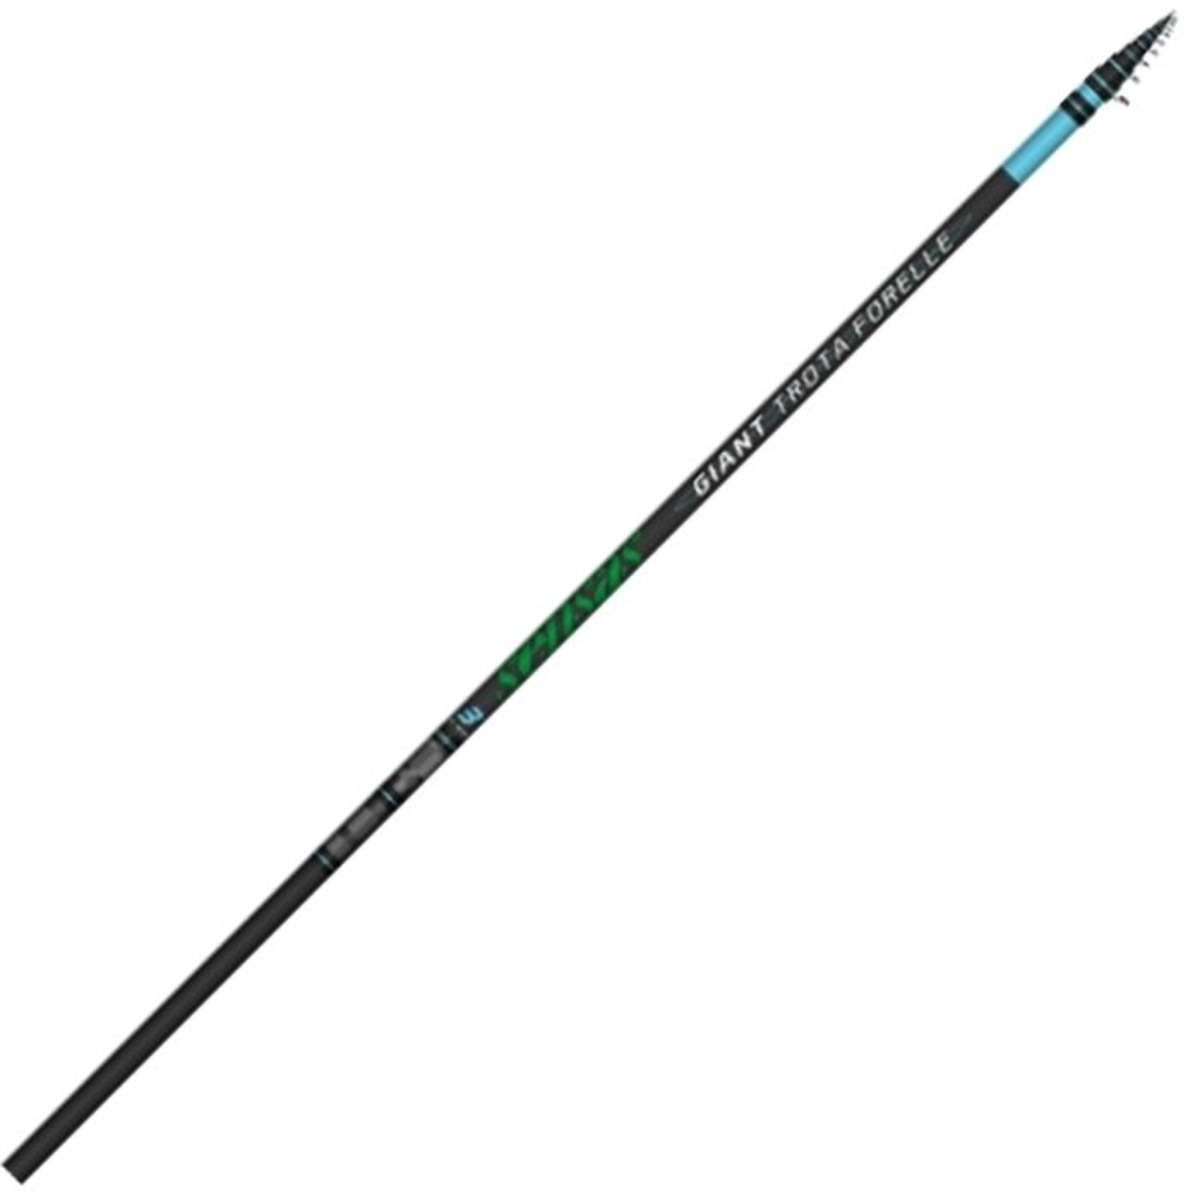 Sensas Giant trota Forelle Rod - 4.20 m - 6-10 g 